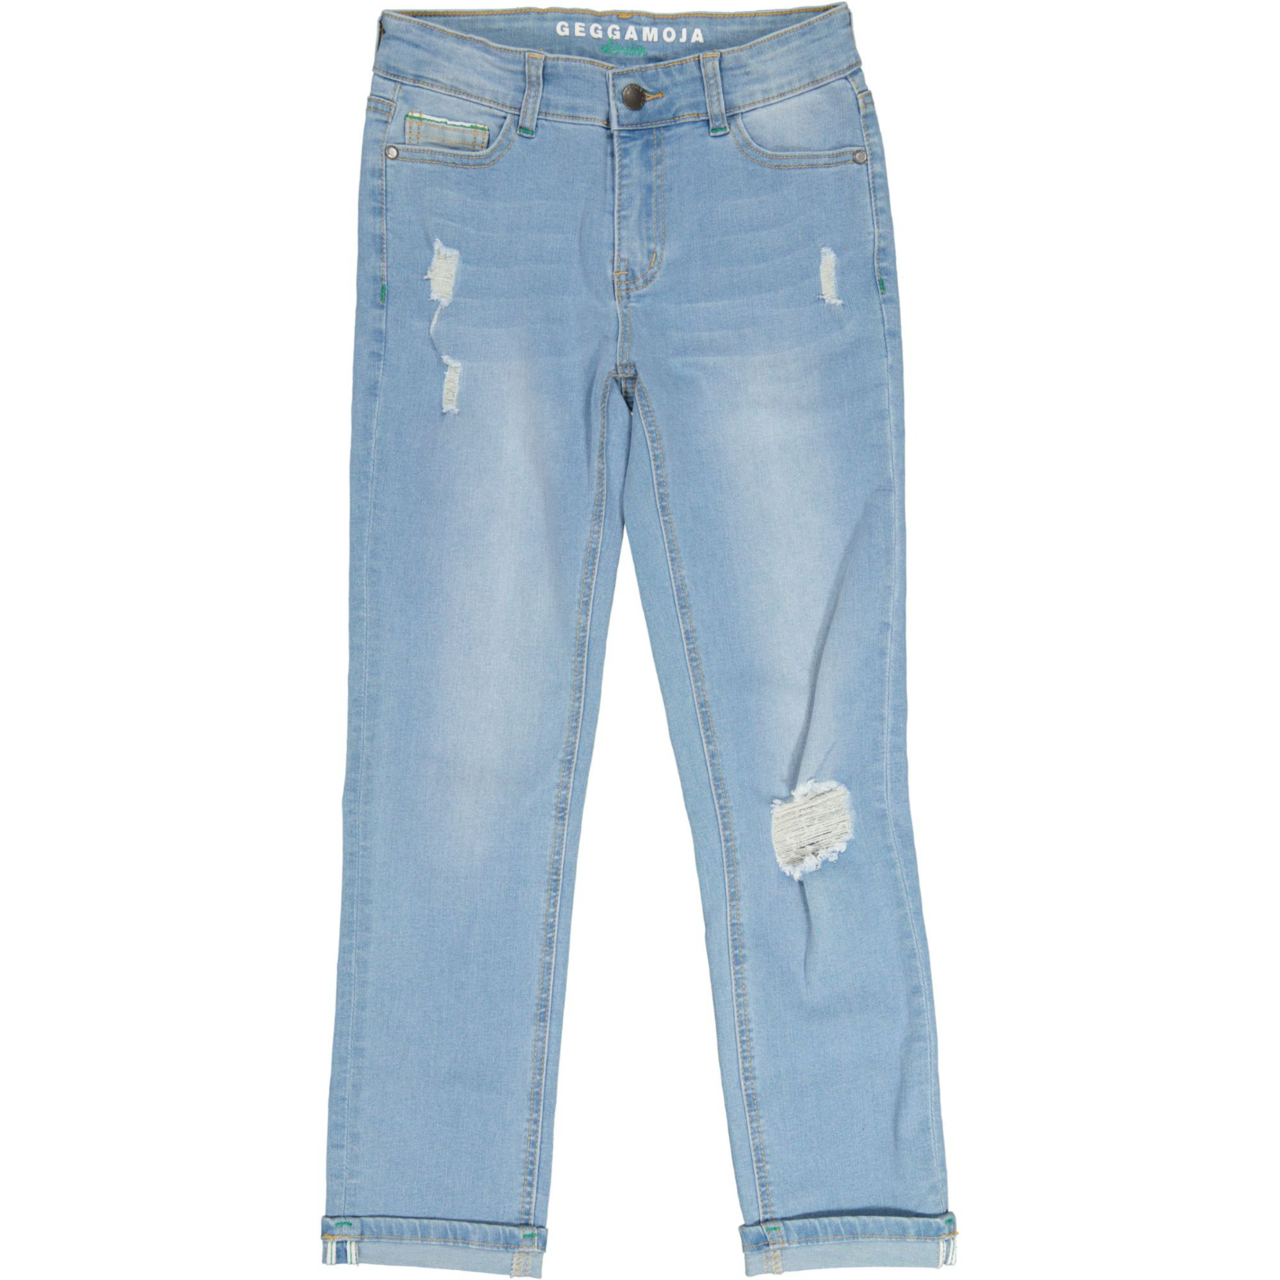 Unisex loose fit jeans Denim blue wash 134/140